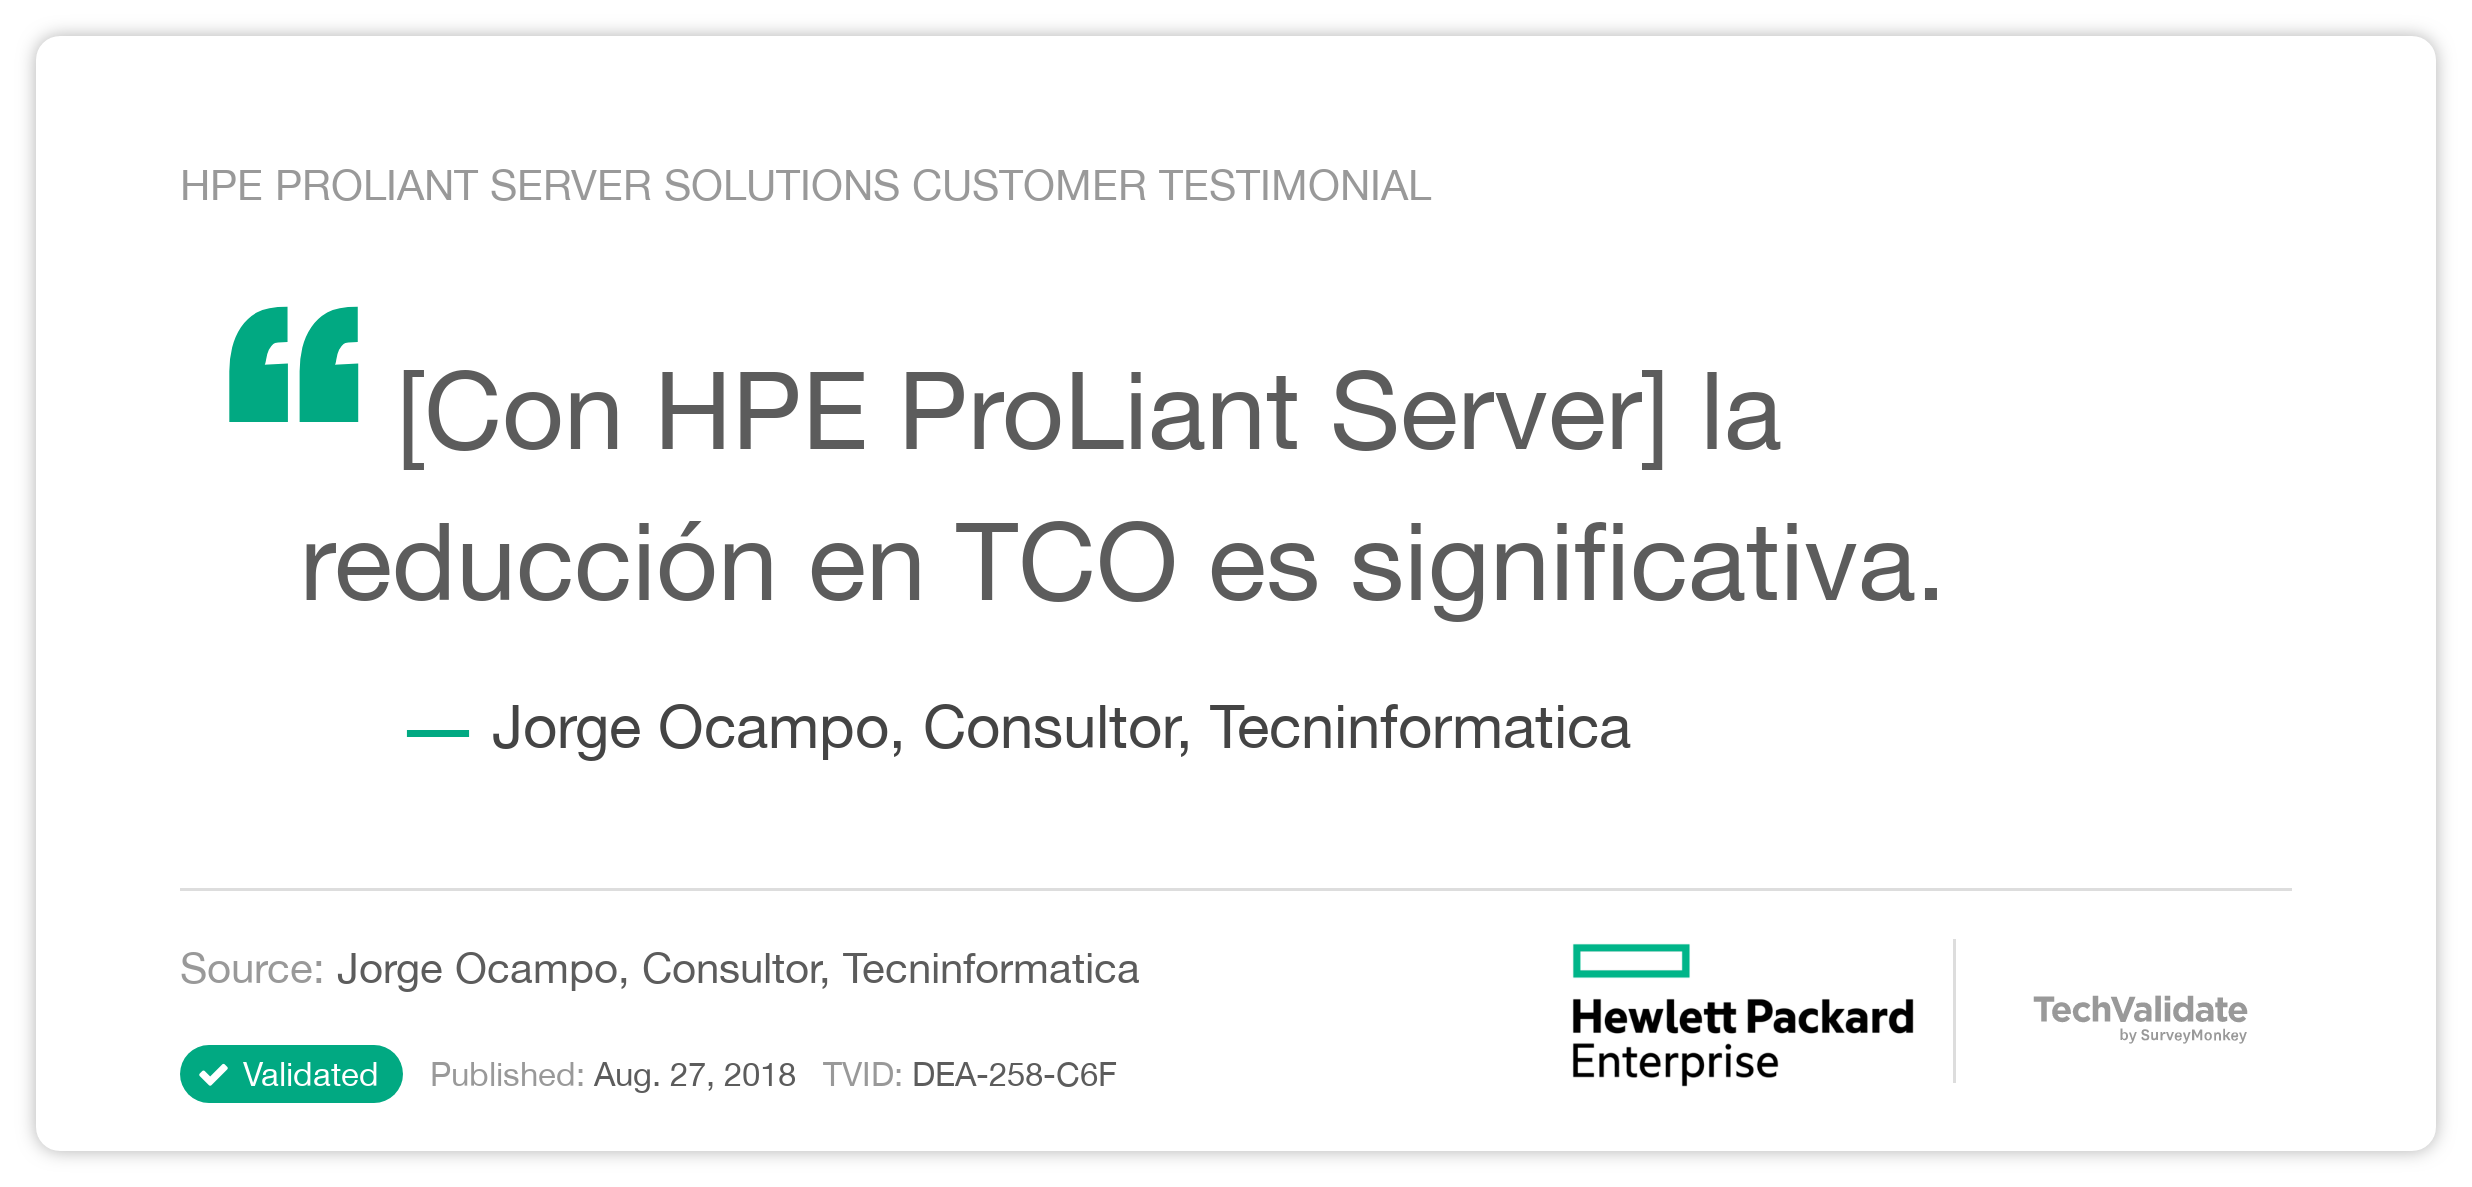 HPE ProLiant Server Solutions Customer Testimonial